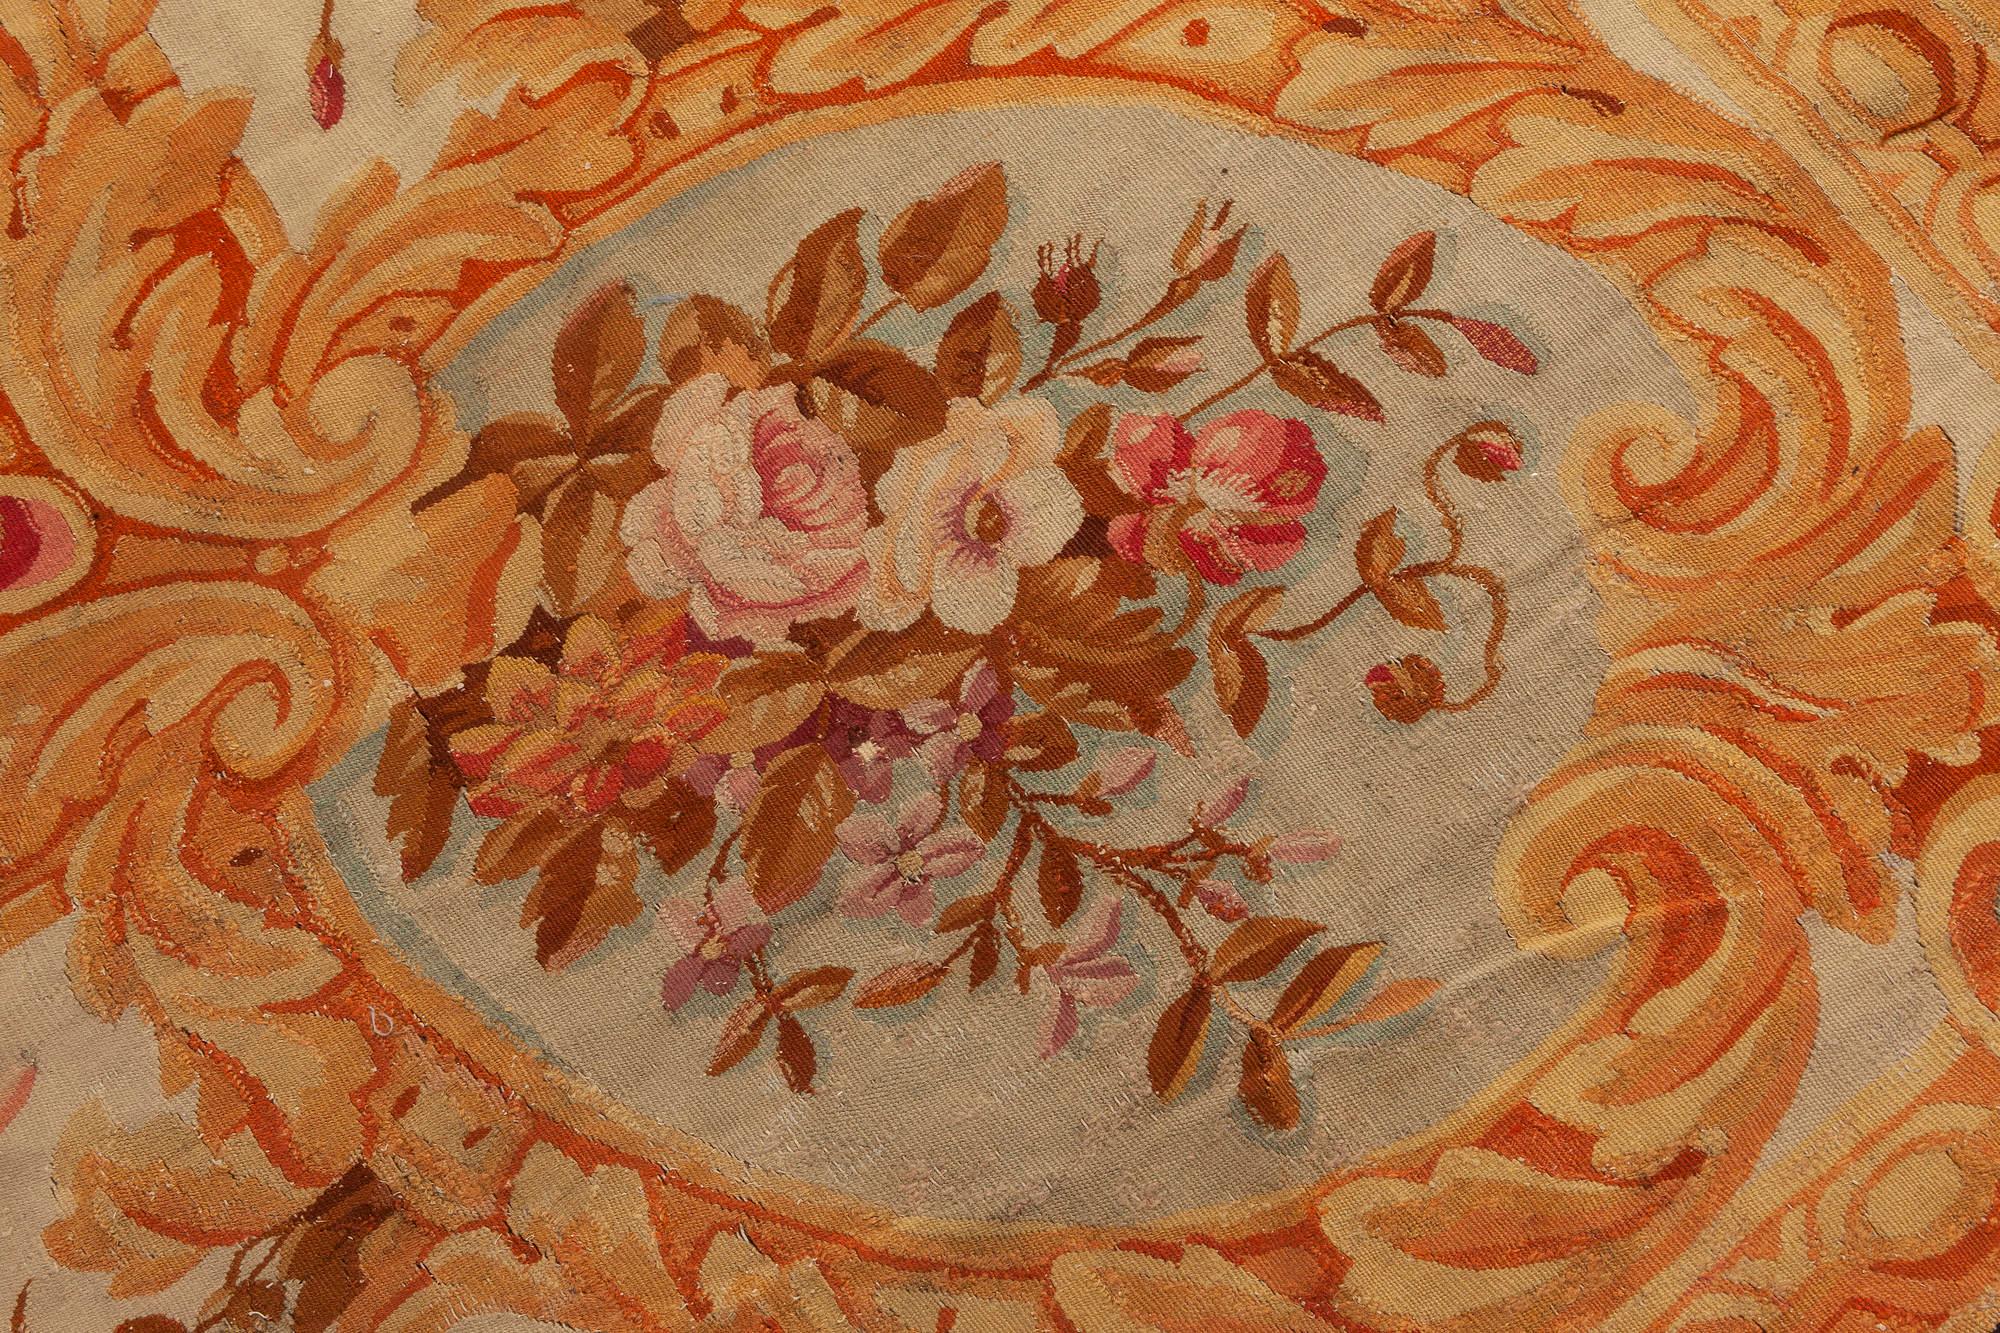 Authentique tapis floral français d'Aubusson beige noir marron or rose du 19ème siècle
Taille : 17'3